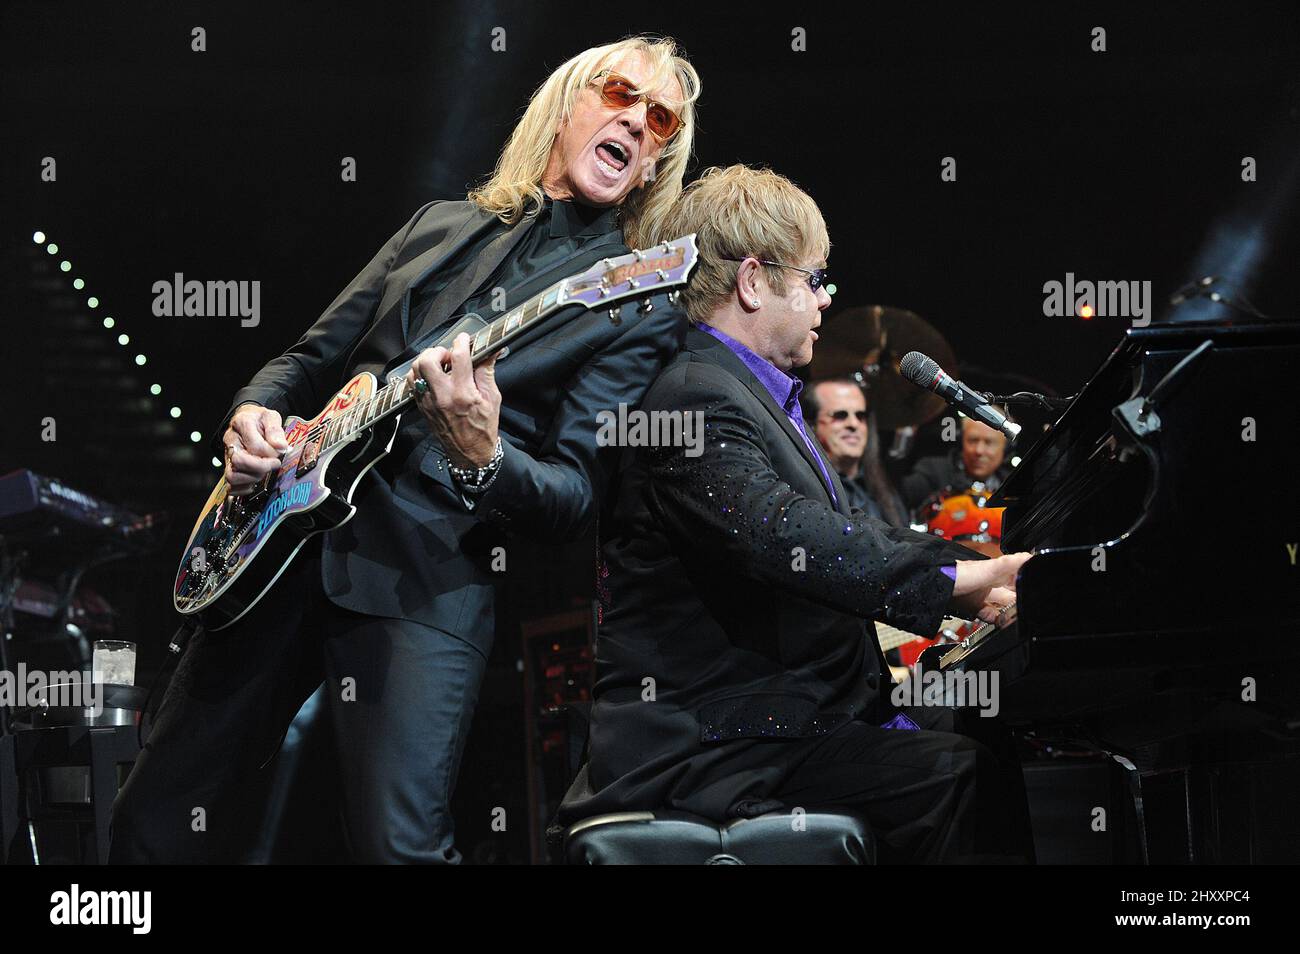 Elton John joue en concert à la PNC Arena de Raleigh, en Caroline du Nord, aux États-Unis. Banque D'Images